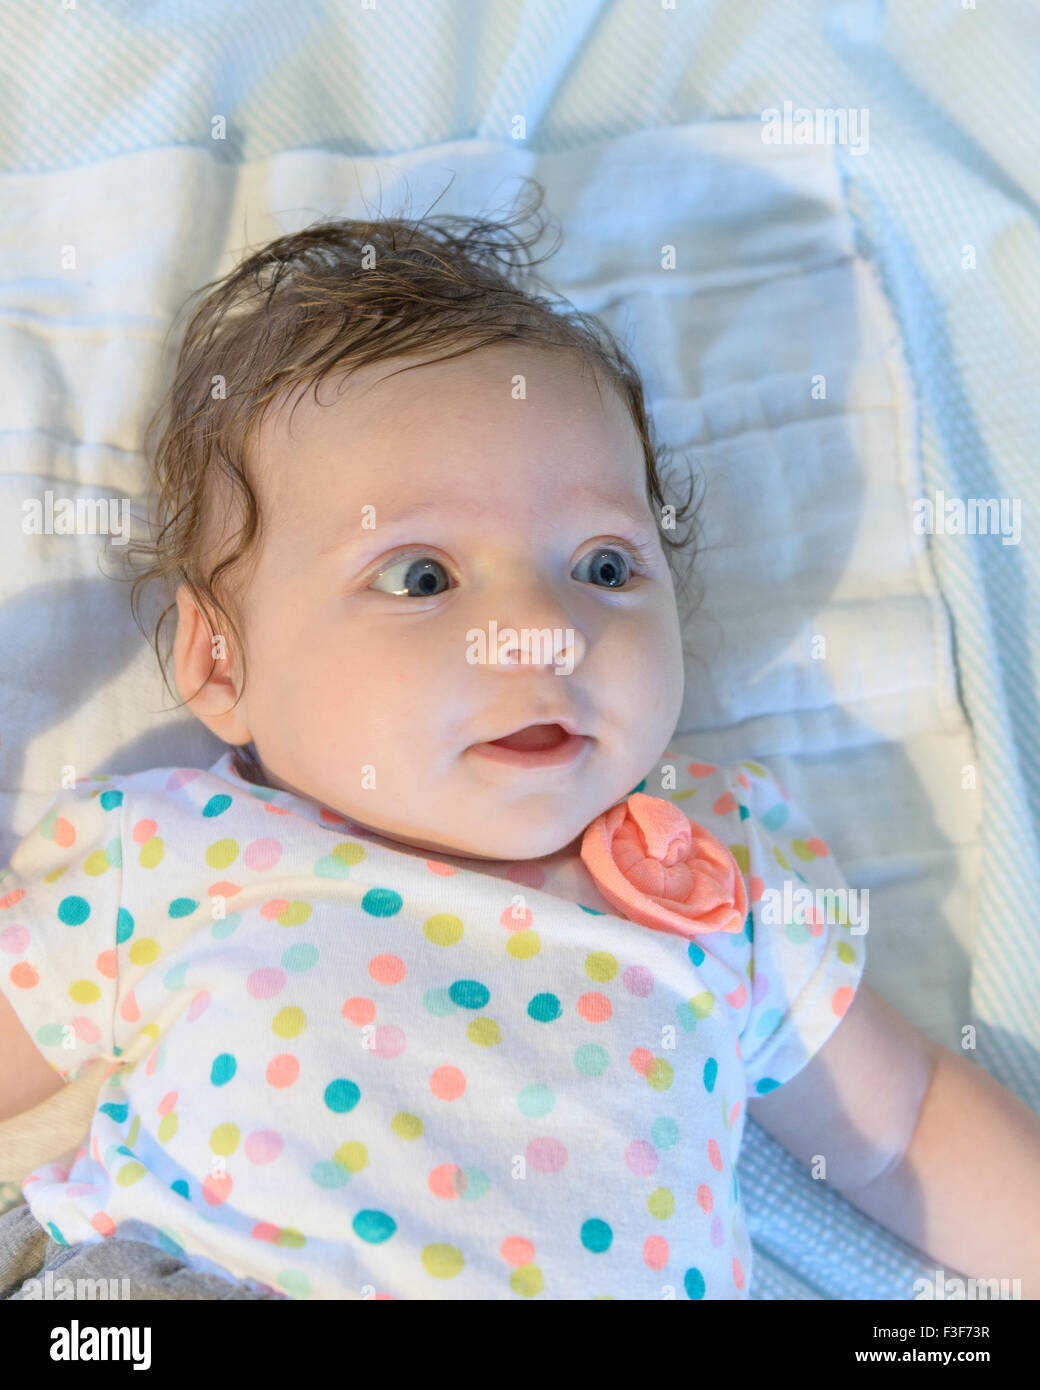 Un bébé de trois mois Caucasian girl avec les cheveux foncés et les yeux bleus. Libre. Banque D'Images